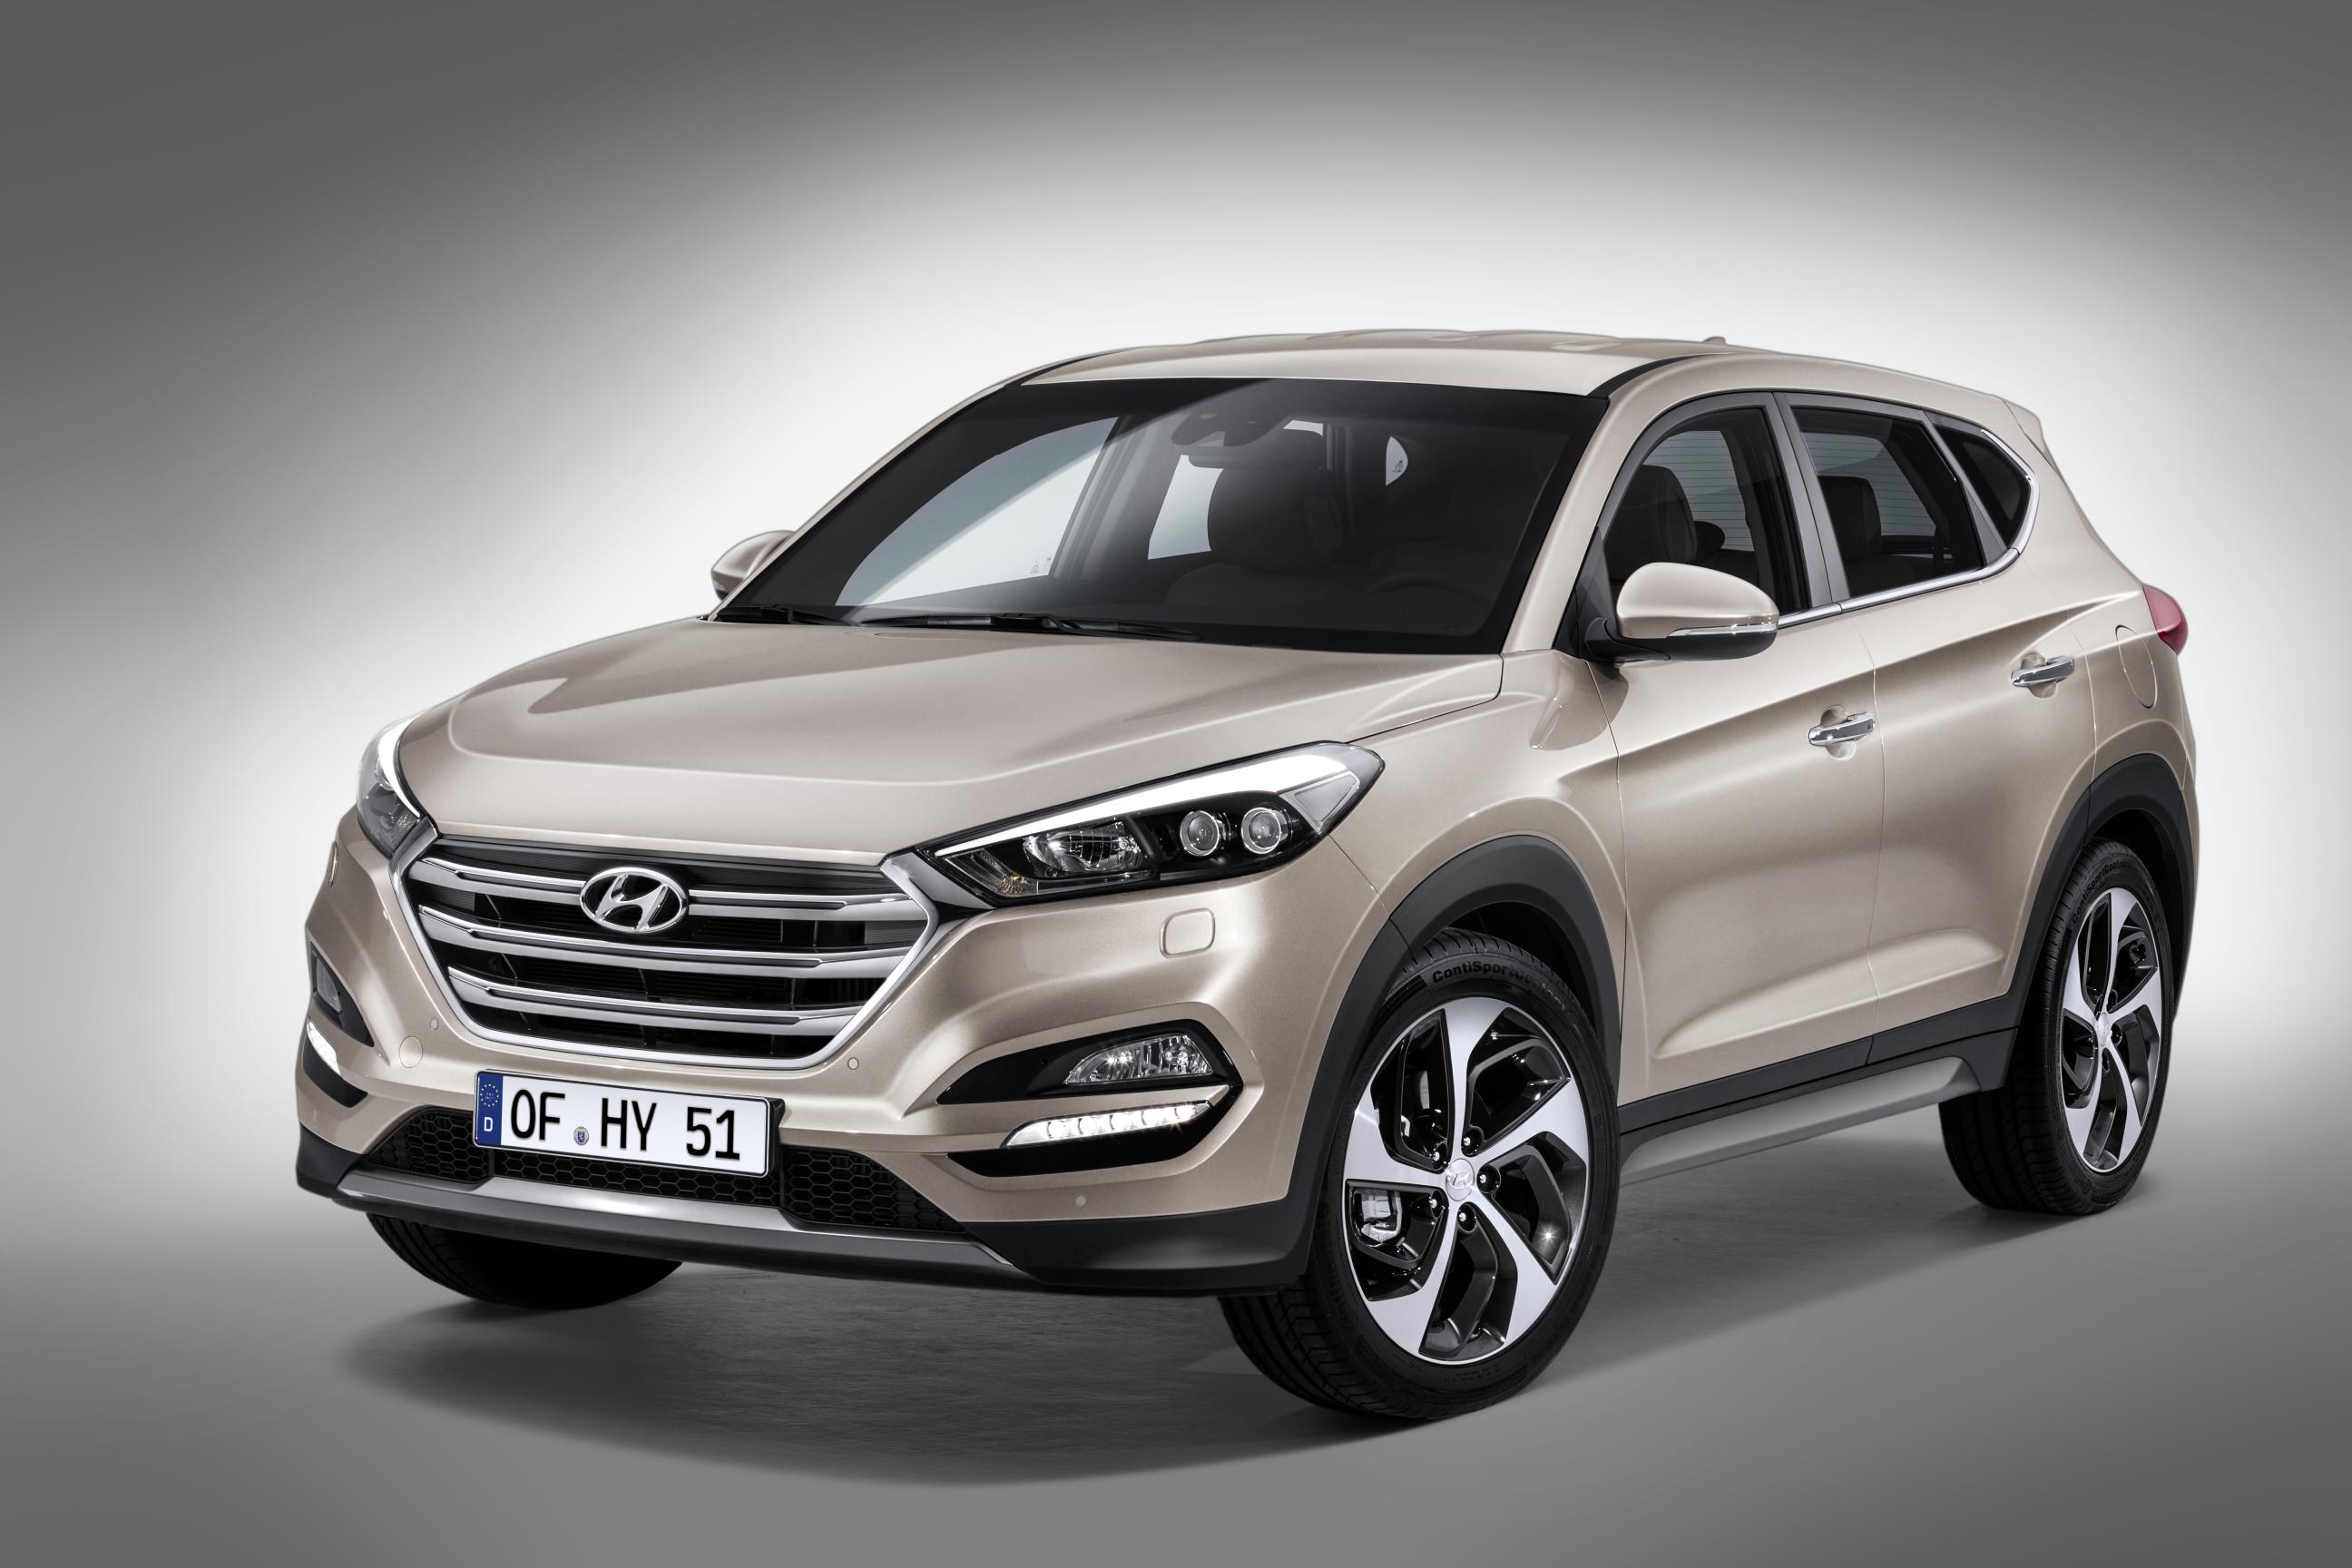 2016 (European) Hyundai Tucson is AllNew [Geneva Preview